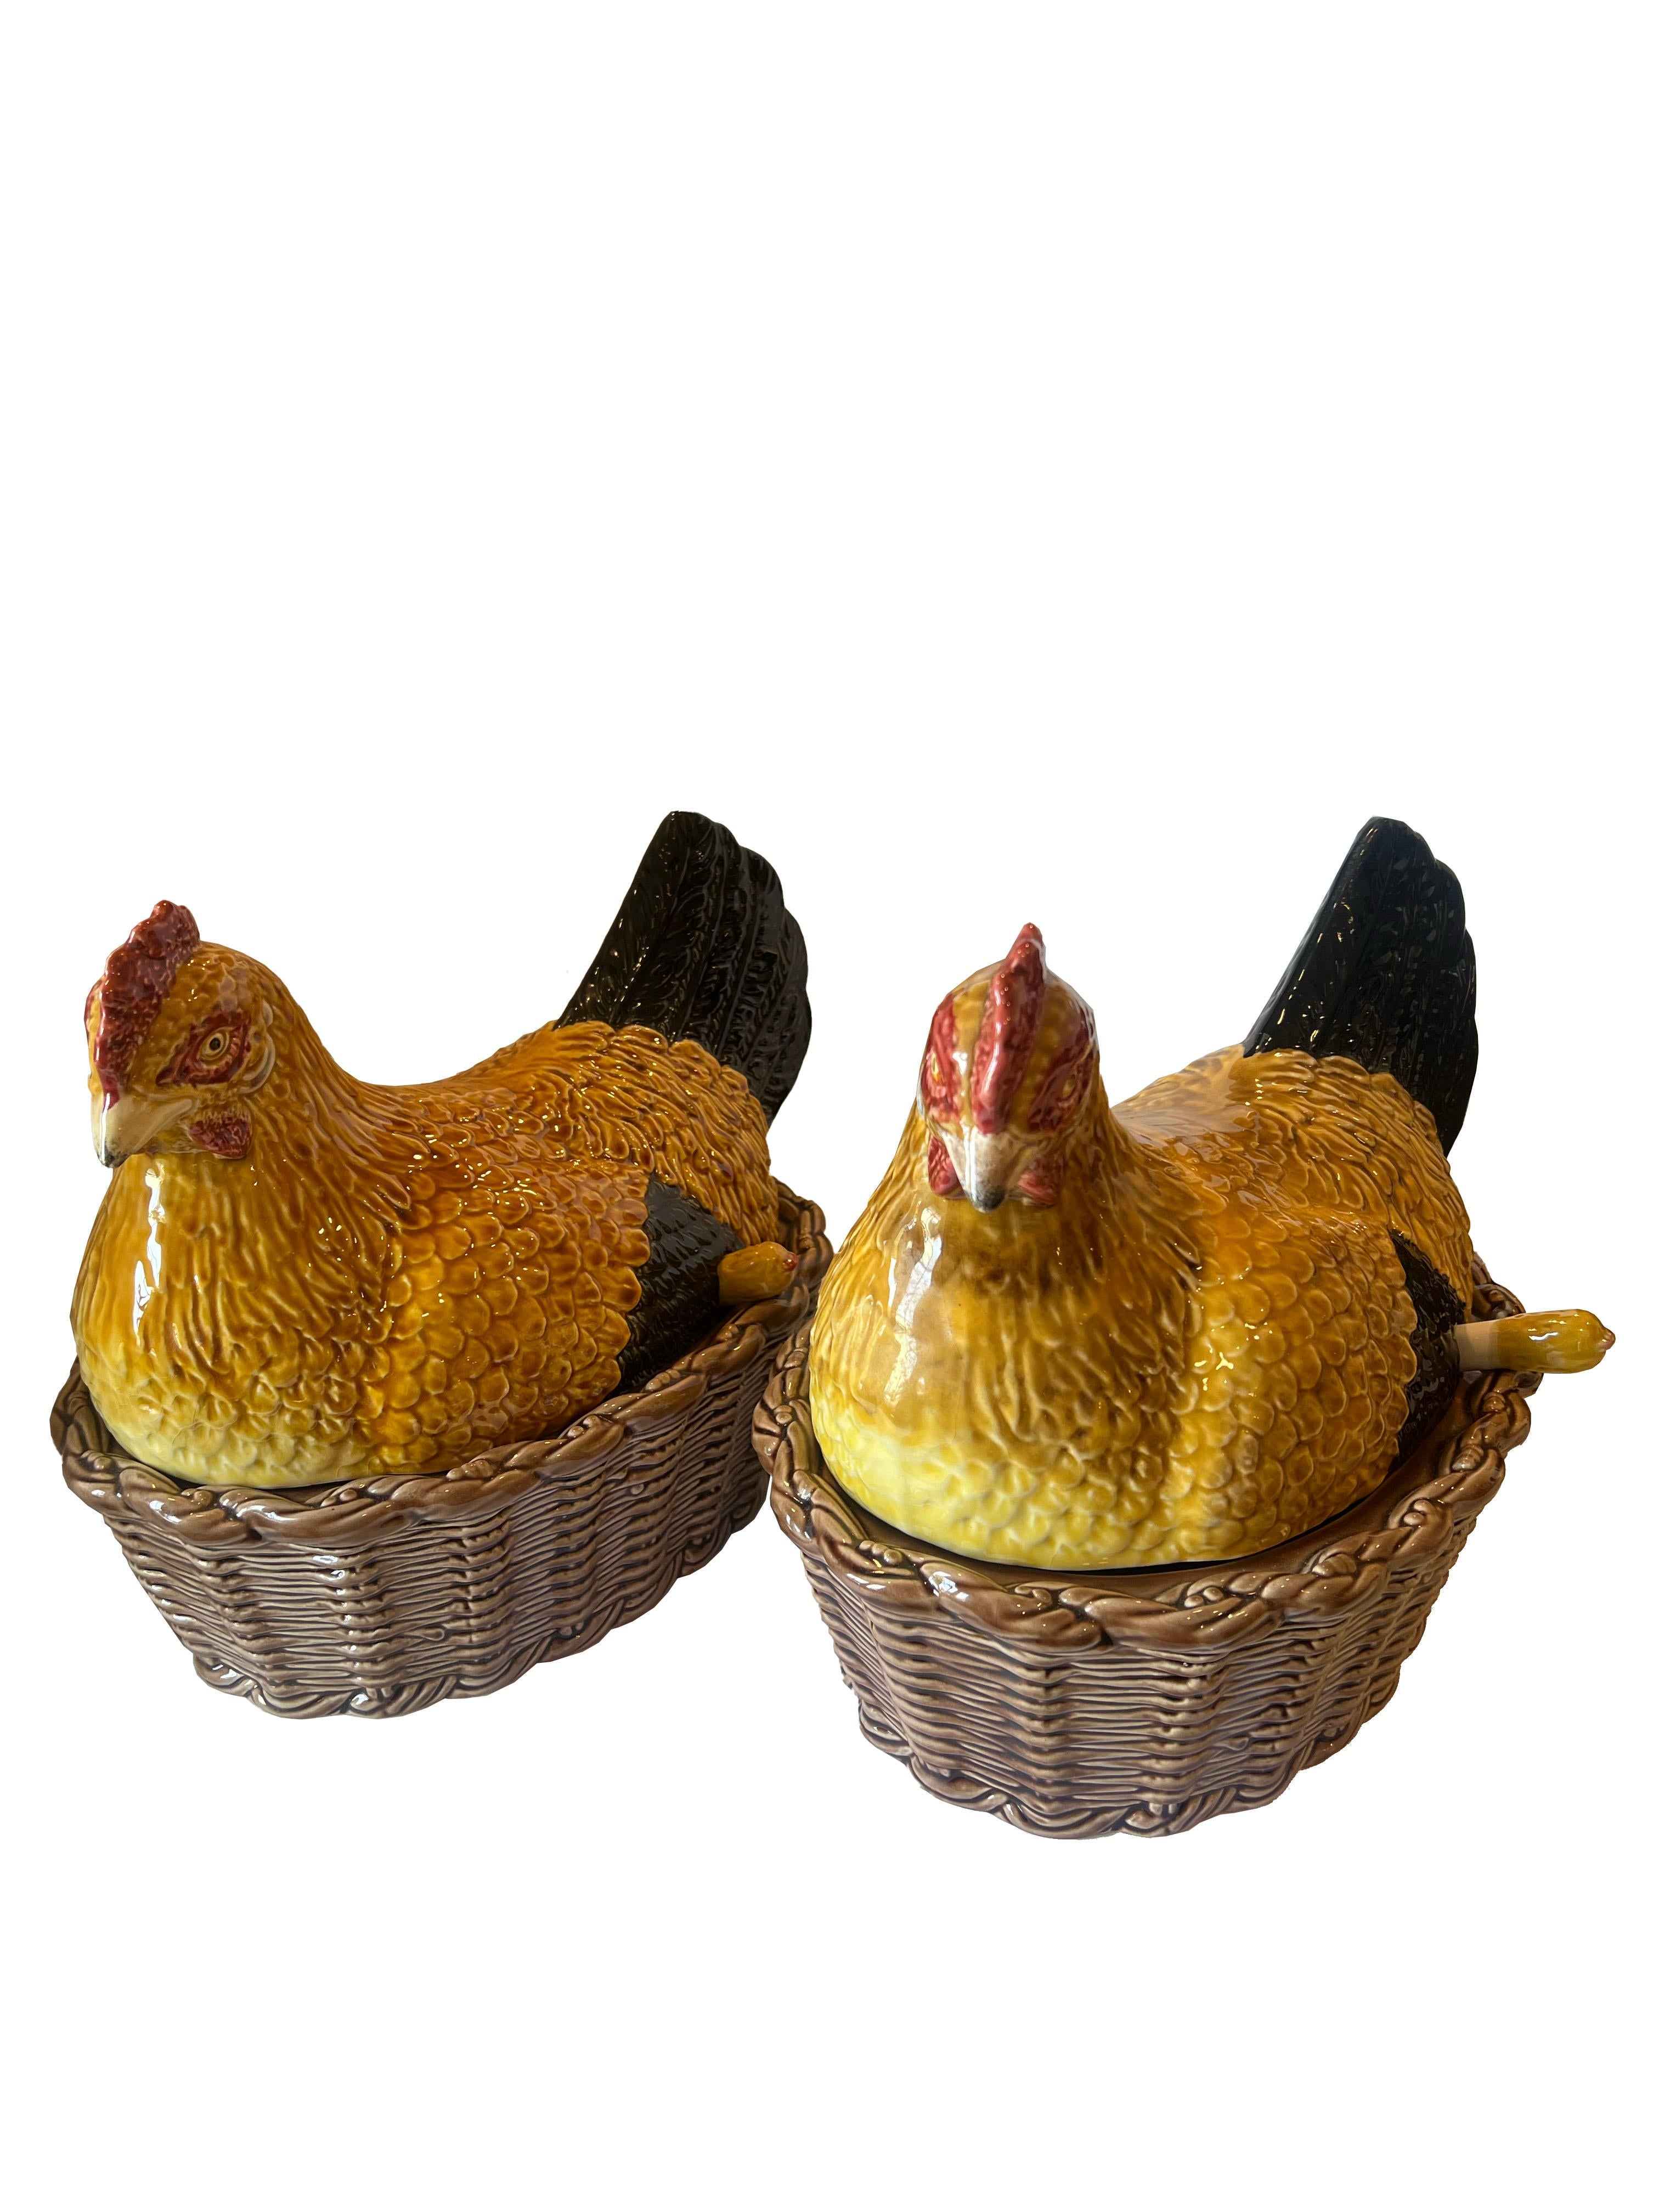 Une délicieuse paire de soupières vintage en forme de poules, ajoutant une touche fantaisiste à votre expérience culinaire. Fabriquées avec un art méticuleux, ces soupières uniques sont accompagnées de louches assorties en forme d'œuf. Ces œuvres